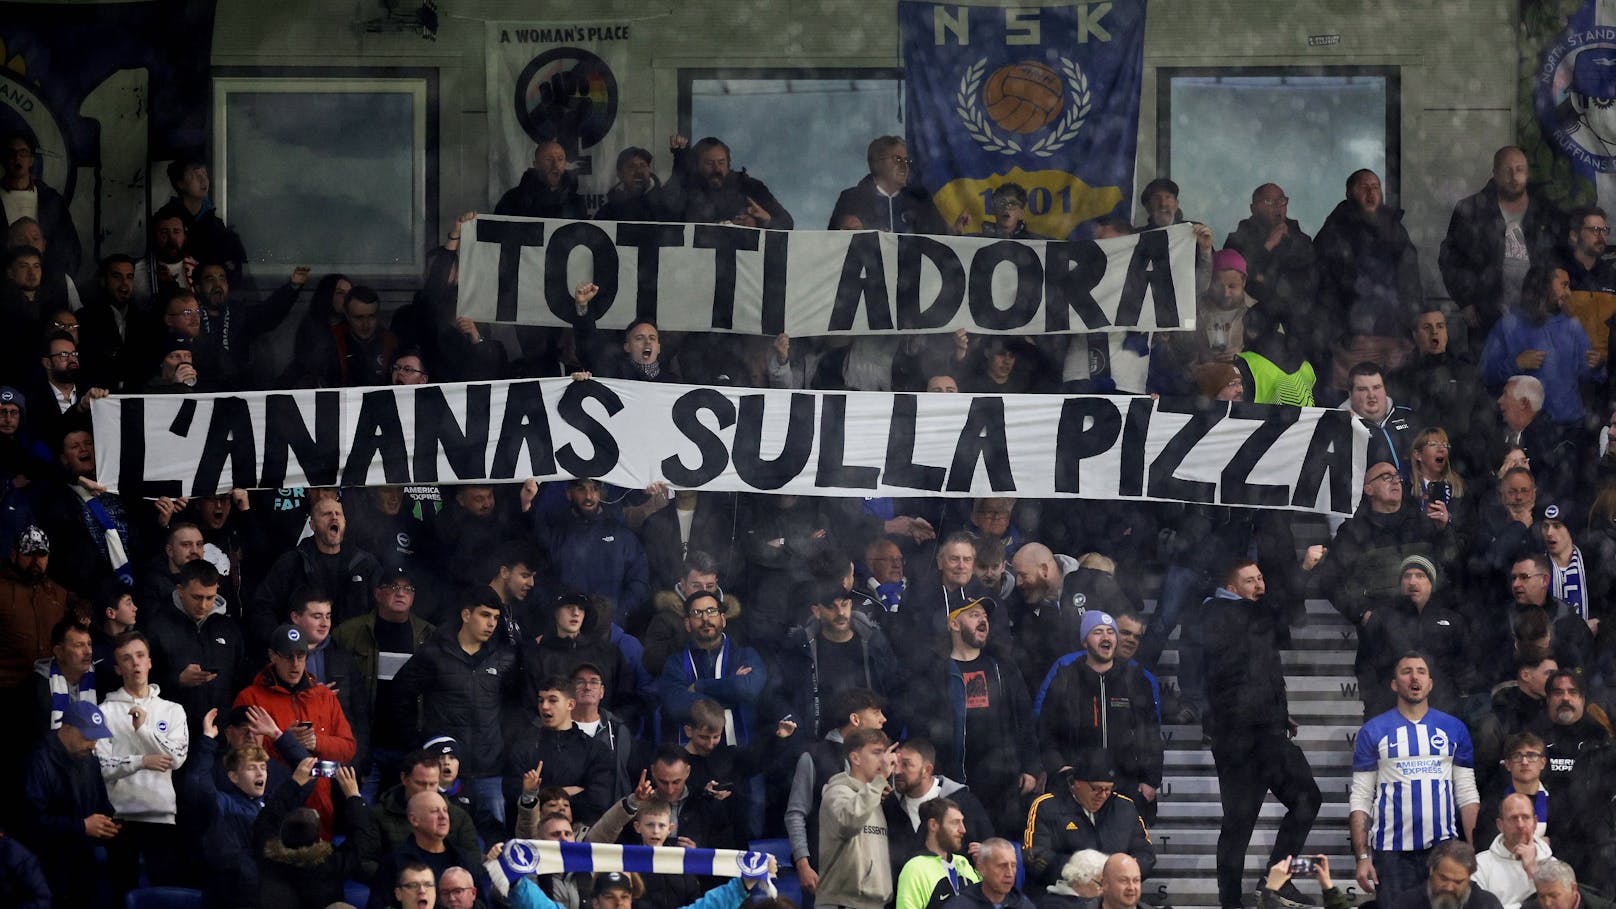 Kuriose Beschimpfung: "Totti mag Ananas auf der Pizza!"